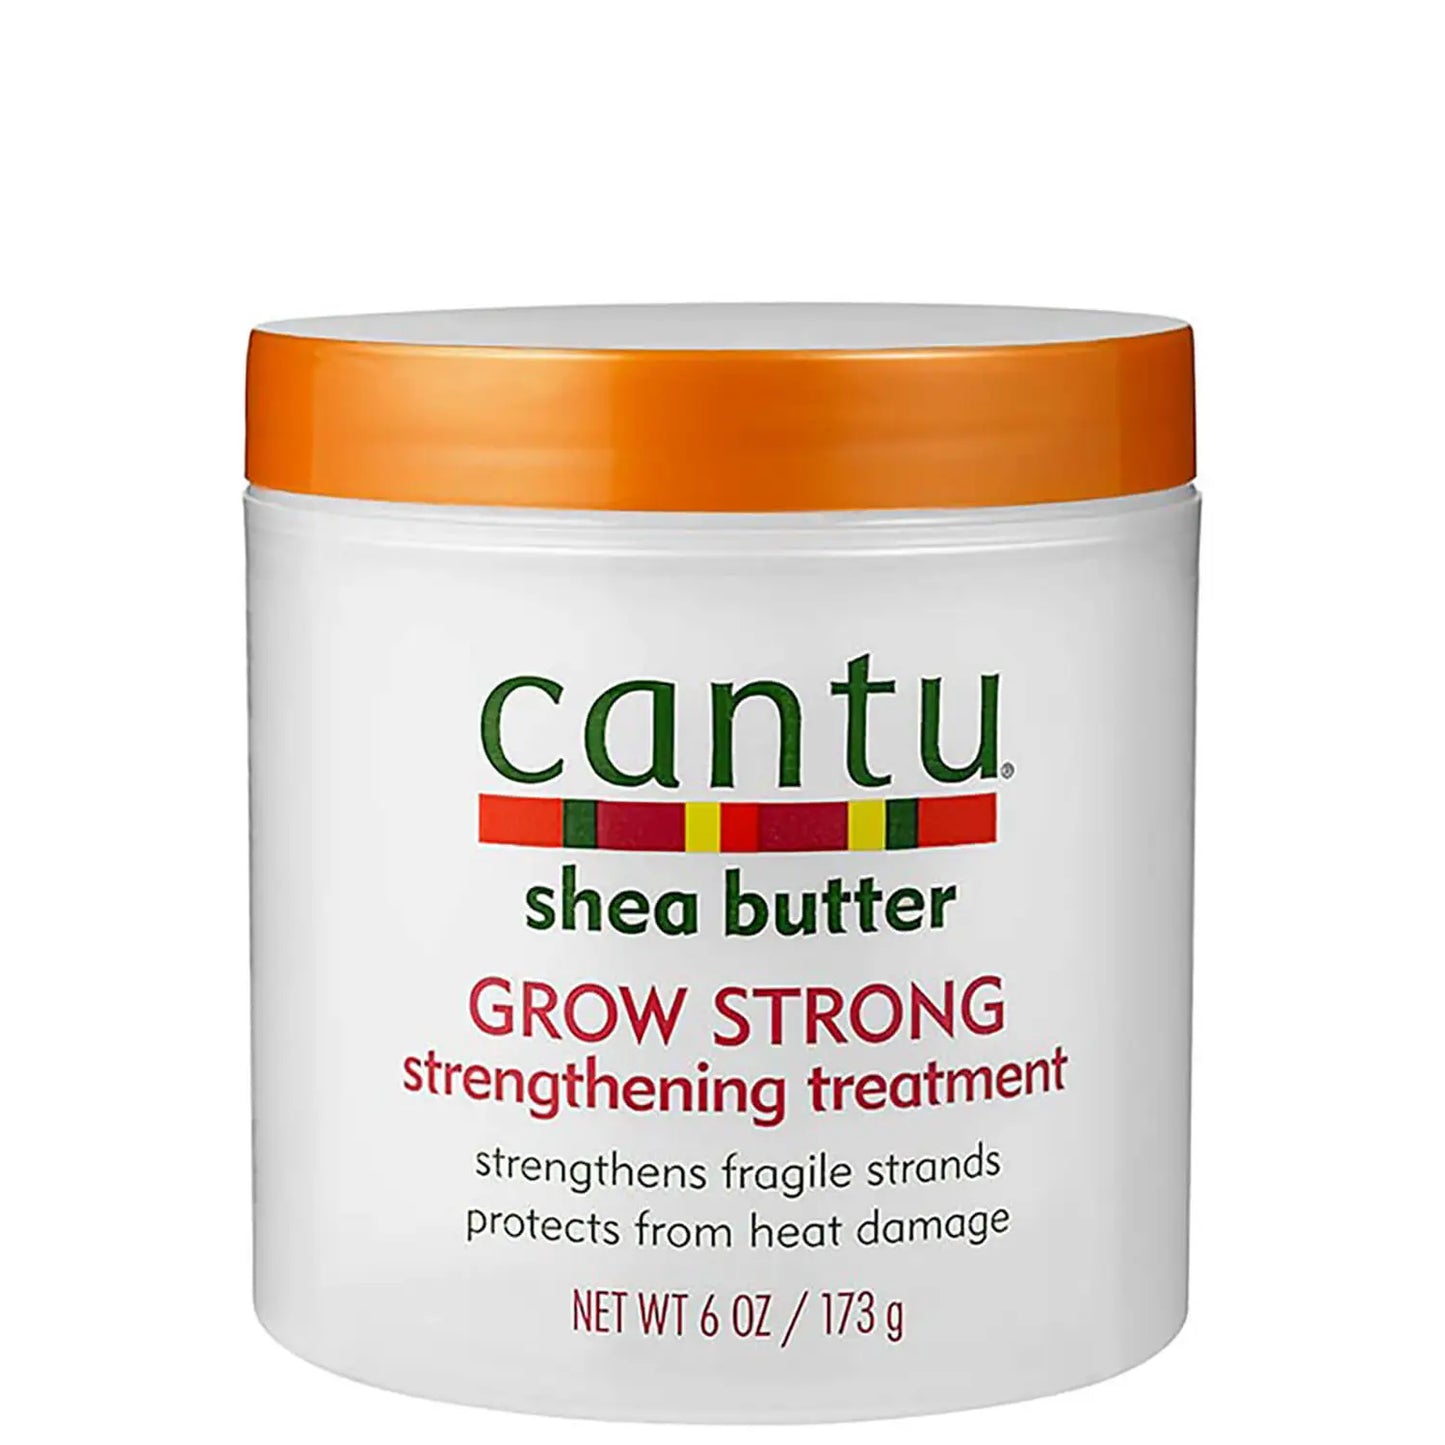 Cantu Shea Butter Grow Strong Strengthening Treatment - 173G